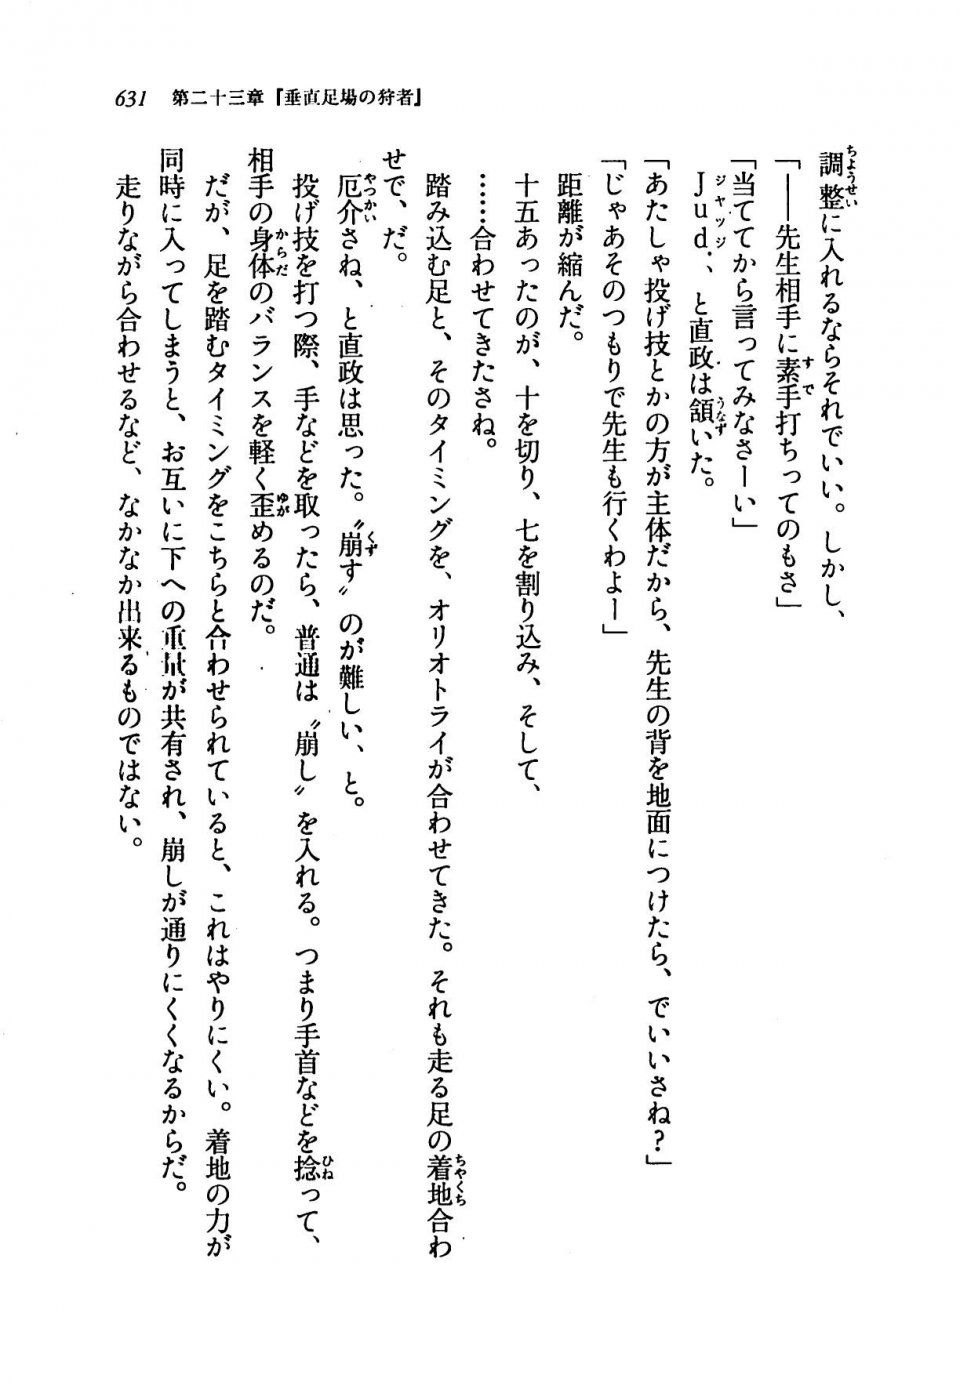 Kyoukai Senjou no Horizon LN Vol 19(8A) - Photo #631